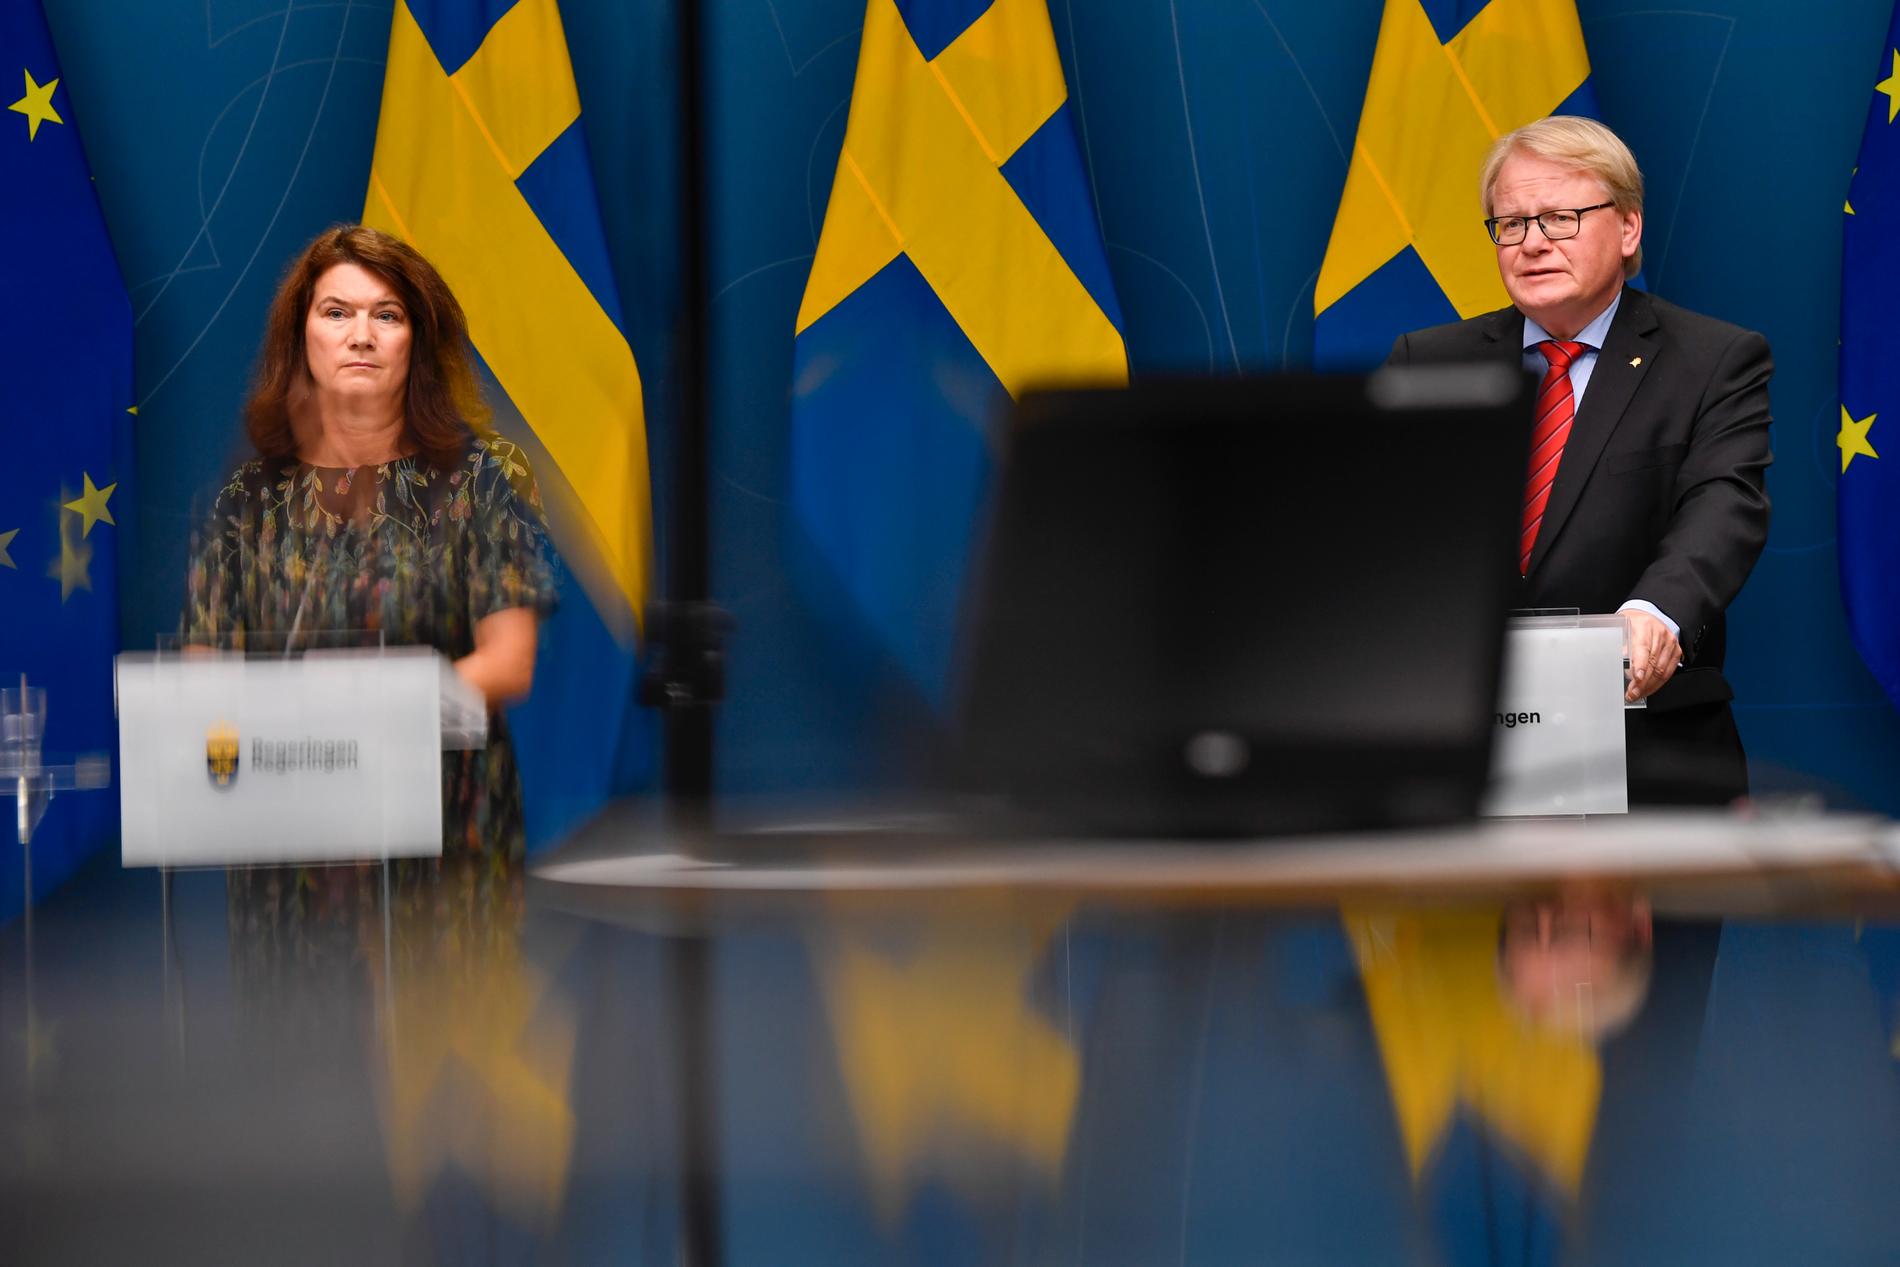 Utrikesminister Ann Linde (S) säger att de ryska hoten mot Sverige är en viktig del av analysen som görs kring det möjliga svenska Natomedlemskapet. ”Europa lever i en hotsituation och att allting har förändrats i grunden” säger Peter Hultqvist.